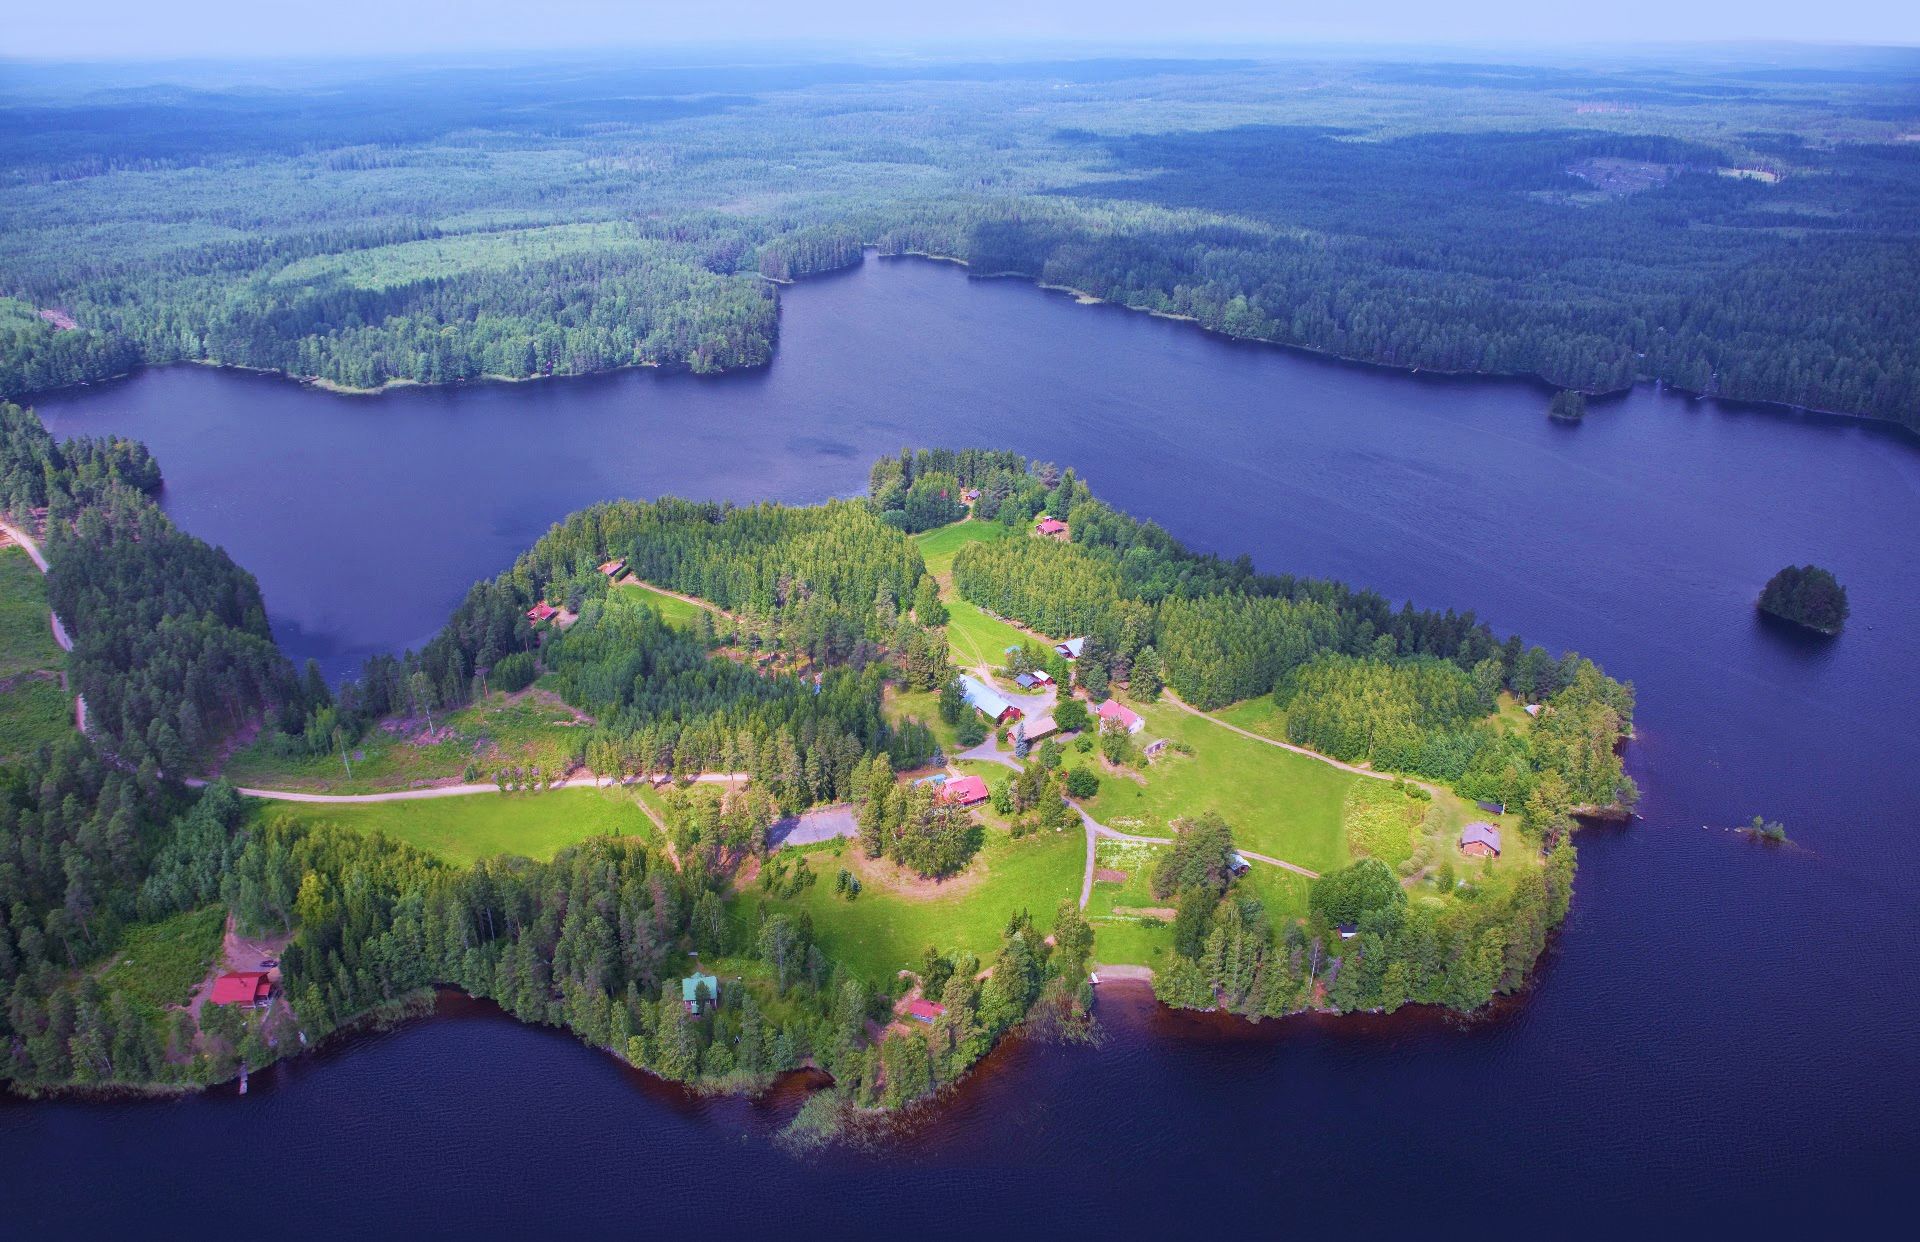 Niemikotkan vuokramökit sijaitsevat niemessä Kotkajärven keskellä Hämeenlinnan Kotkajärvellä Iittalassa